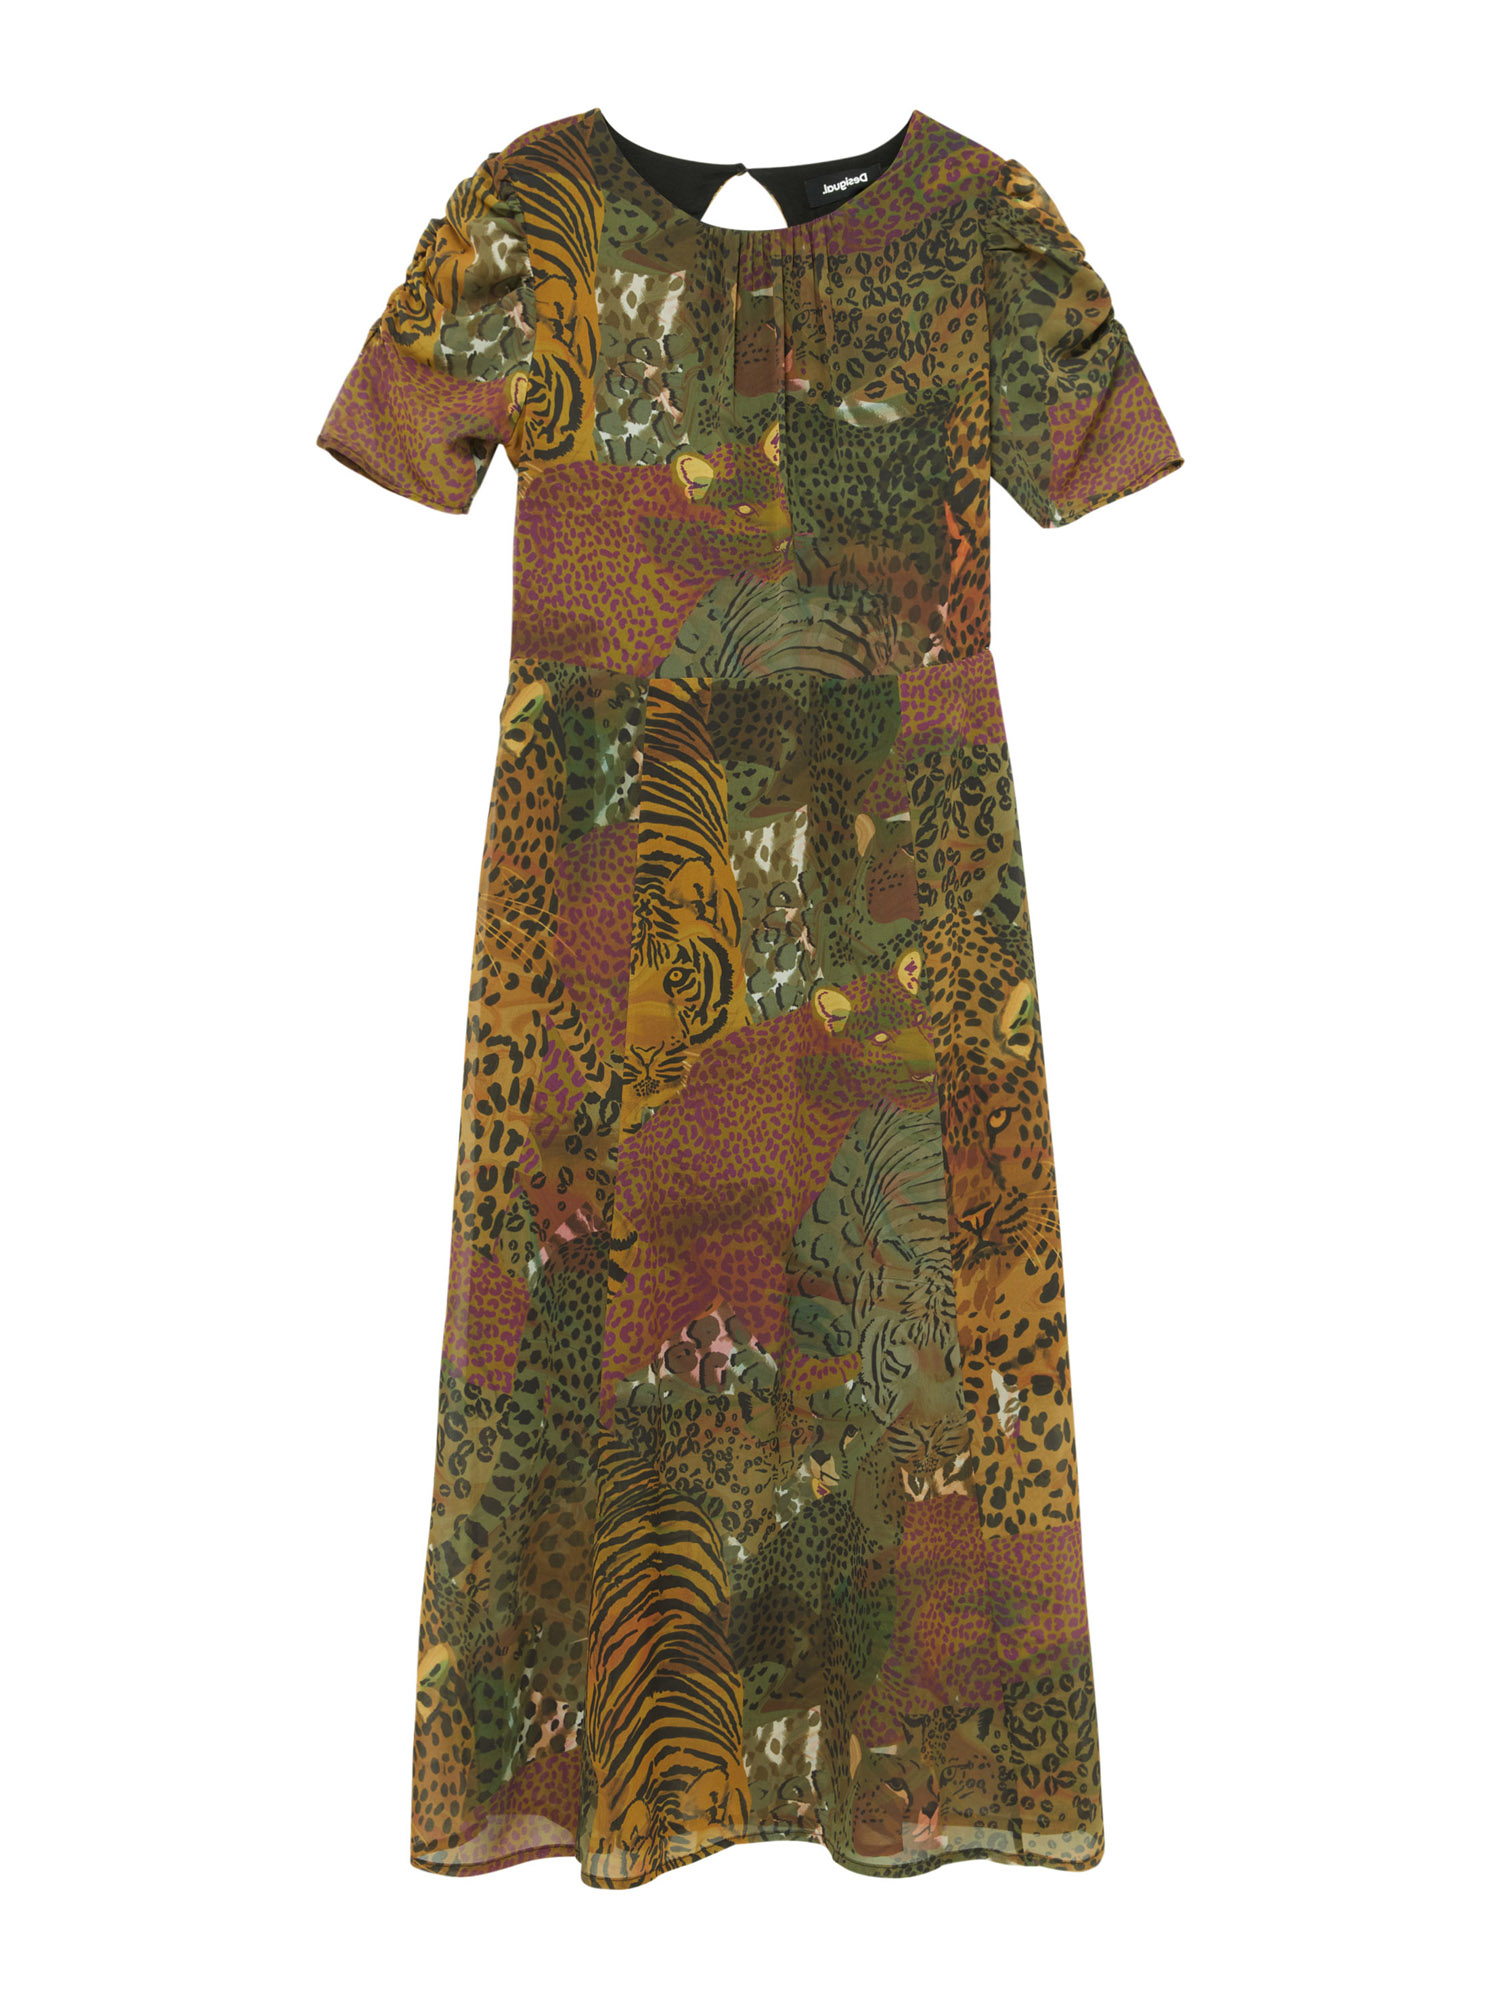 Kobiety Odzież Desigual Kleid SALOMON w kolorze Zielonym 